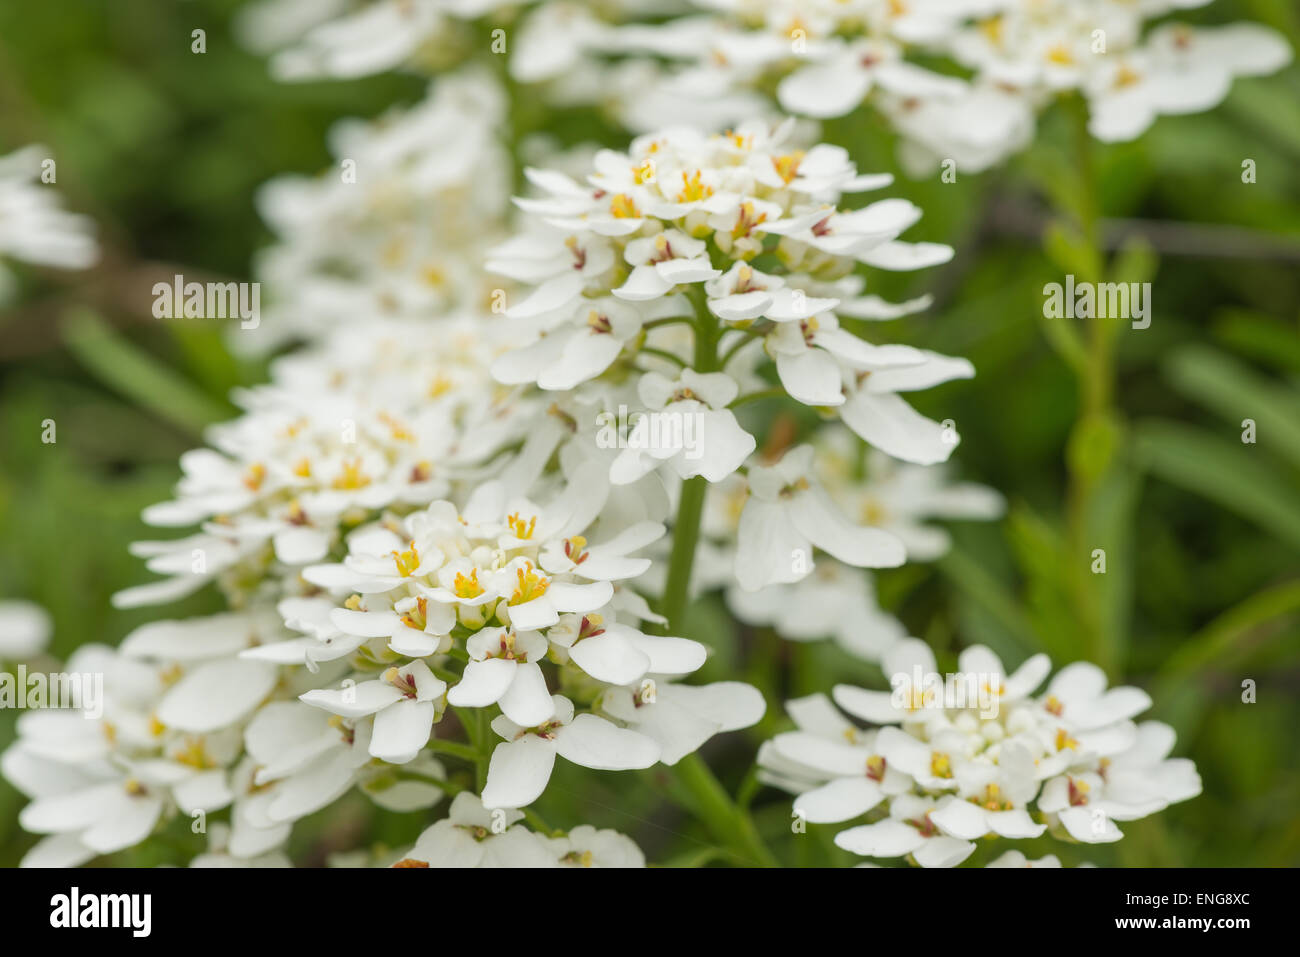 Thlaspi sauvages avec des fleurs odorantes Blanc sur vert profond feuillage persistant Banque D'Images